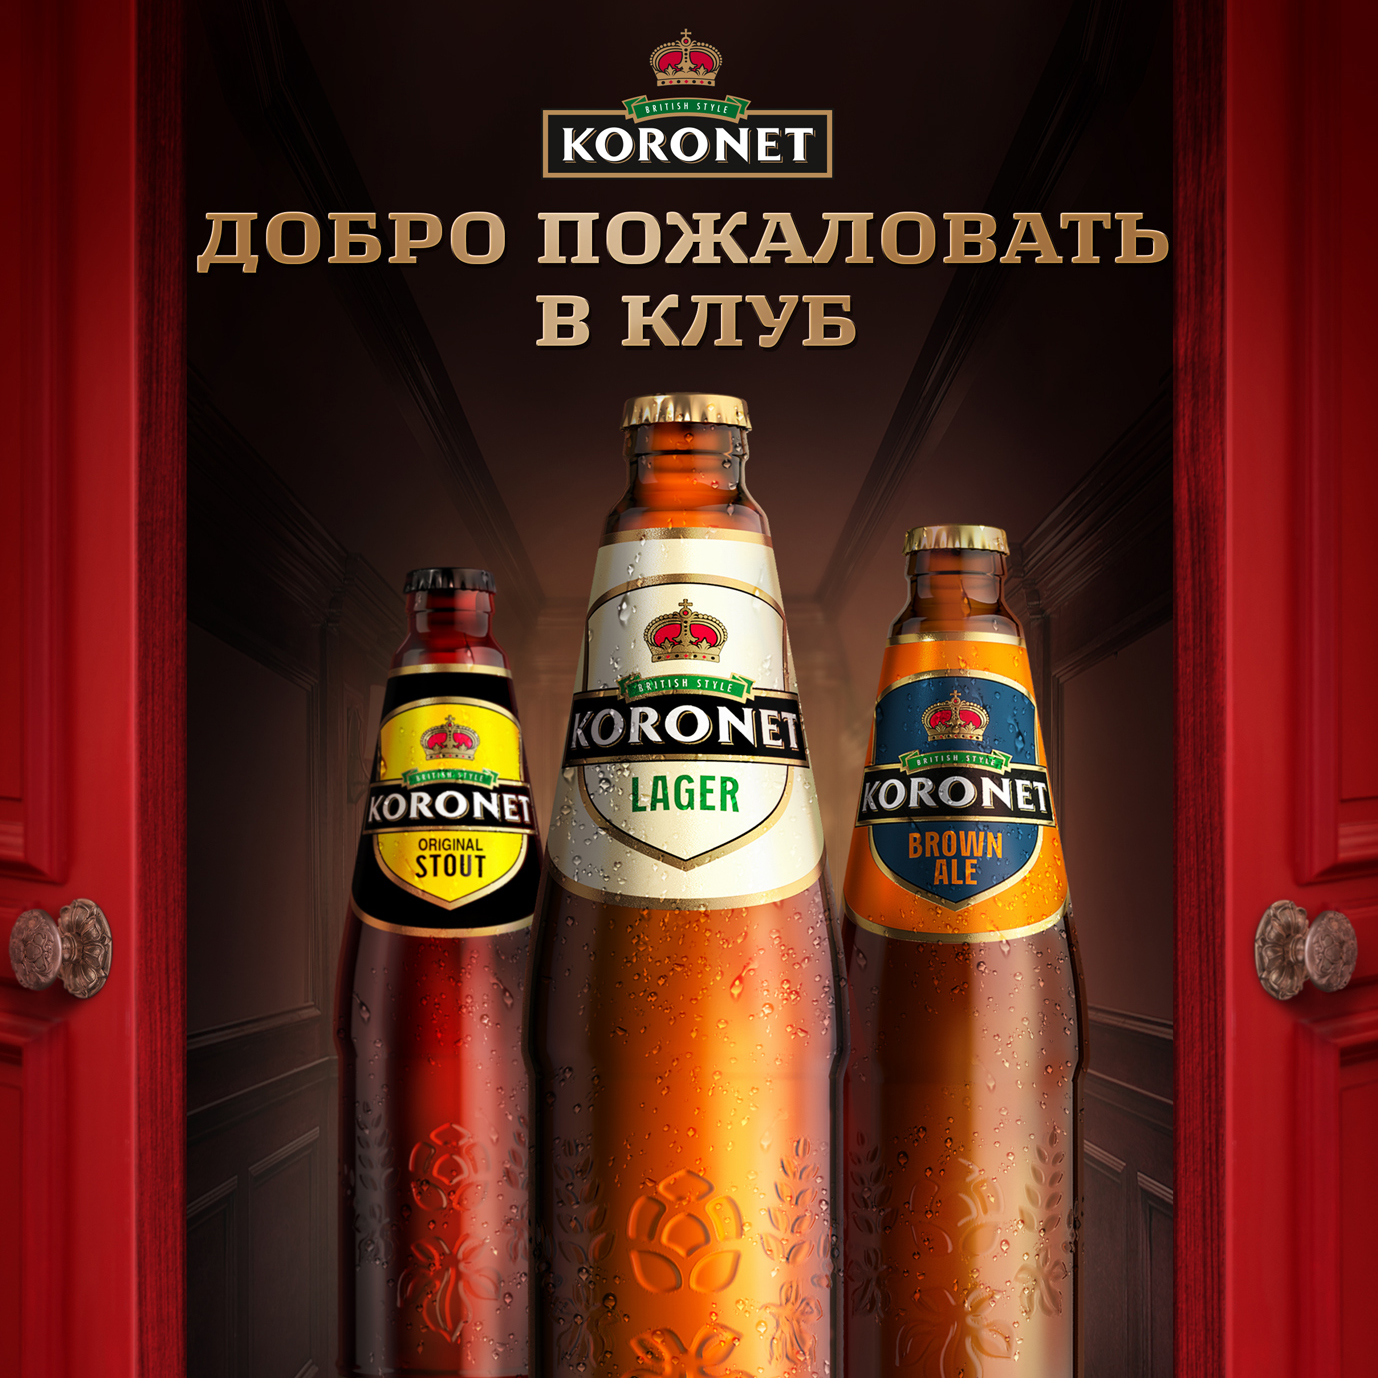 Рекламный ролик, Рекламная кампания, Лидское пиво, TDI Group, KORONET